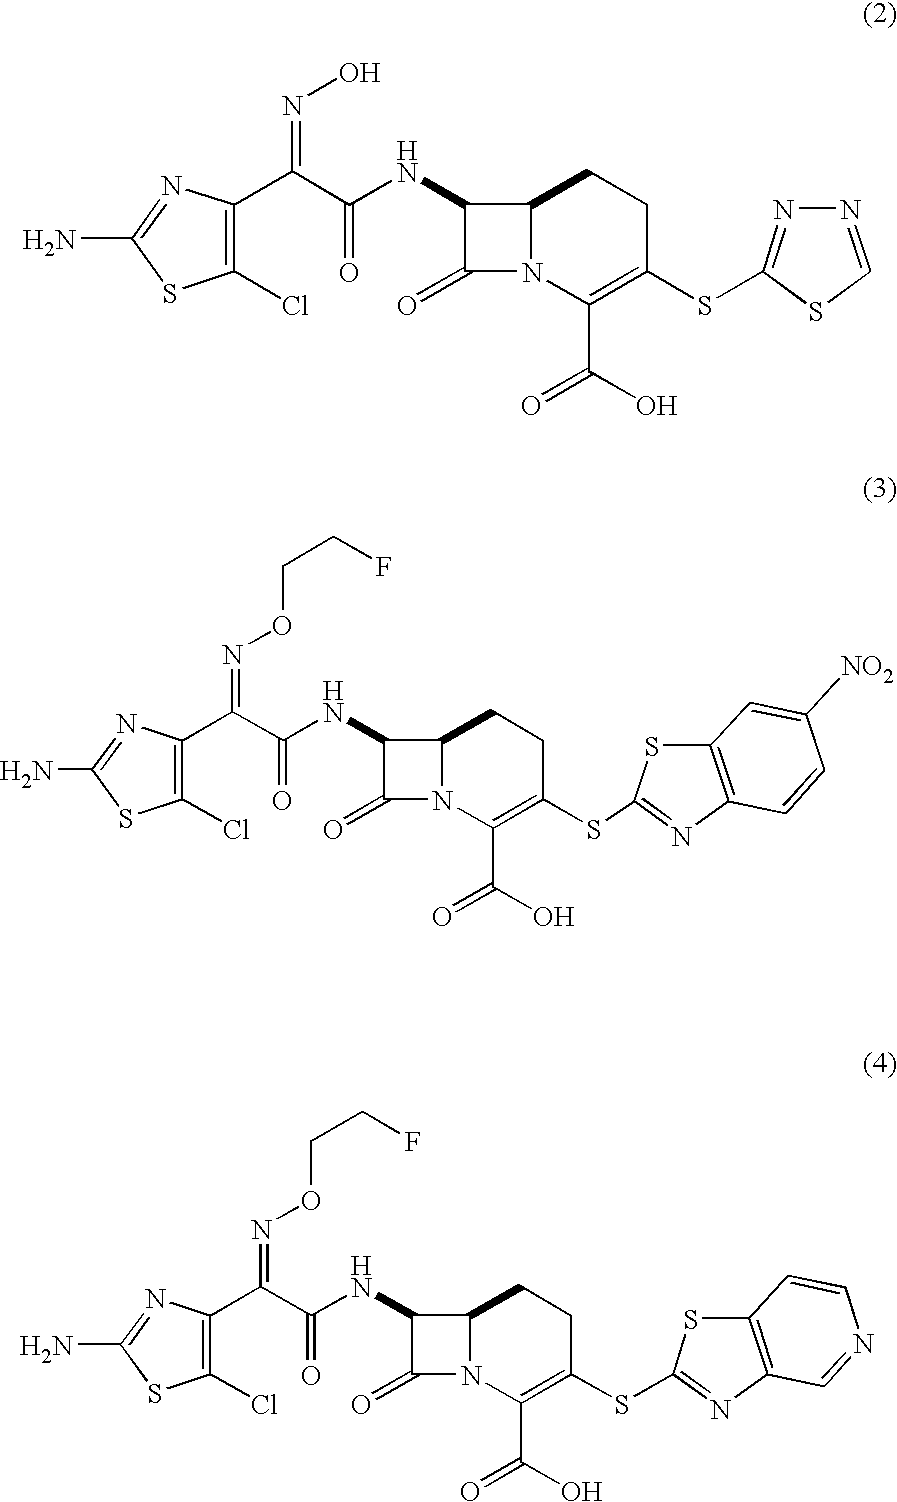 Carbacephem beta-lactam antibiotics